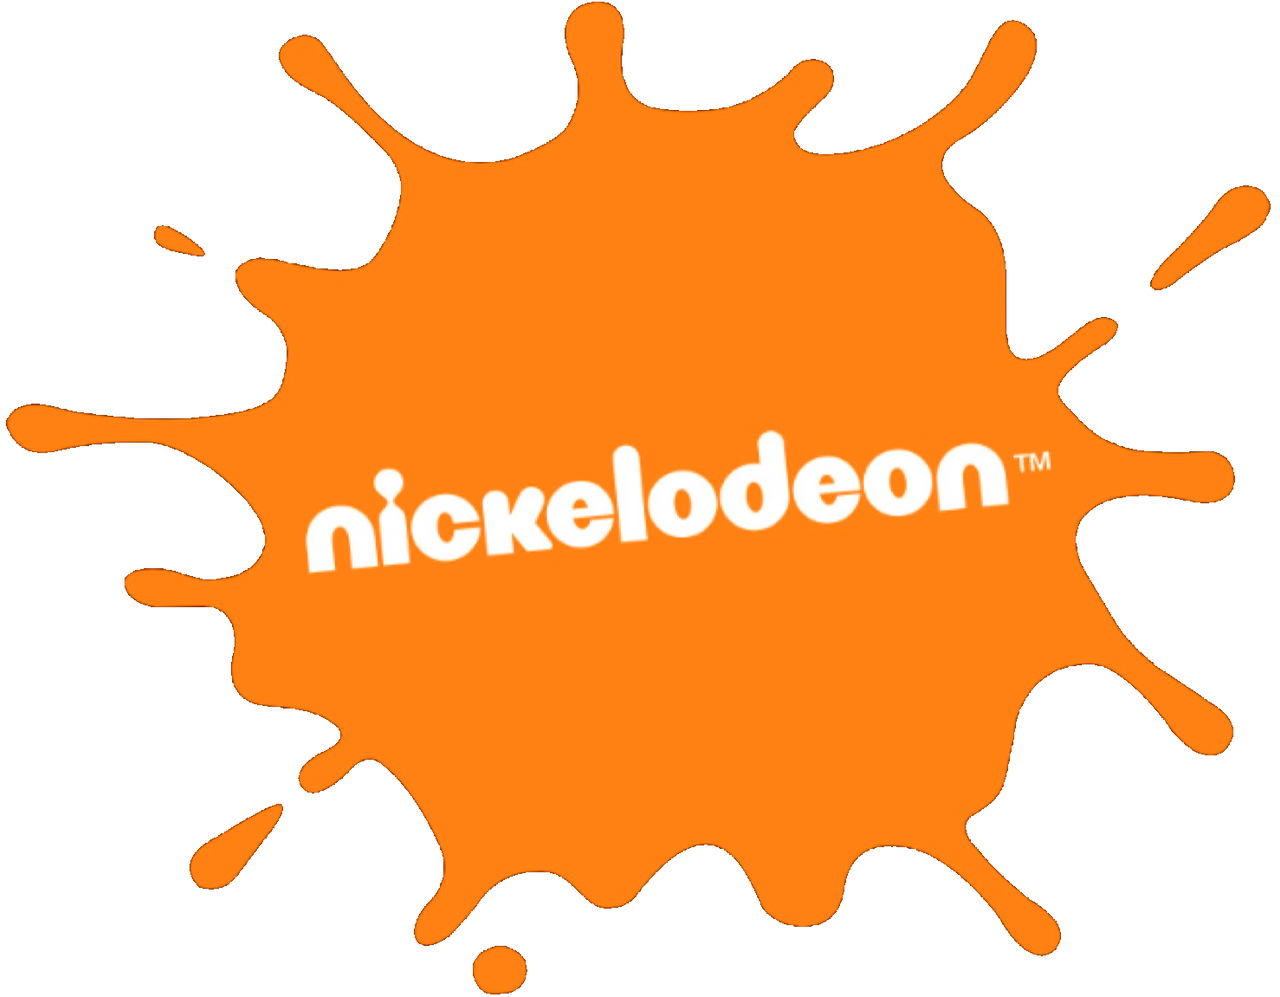 Nickelodeon splat logo but 2009 by Yihen0227 on DeviantArt